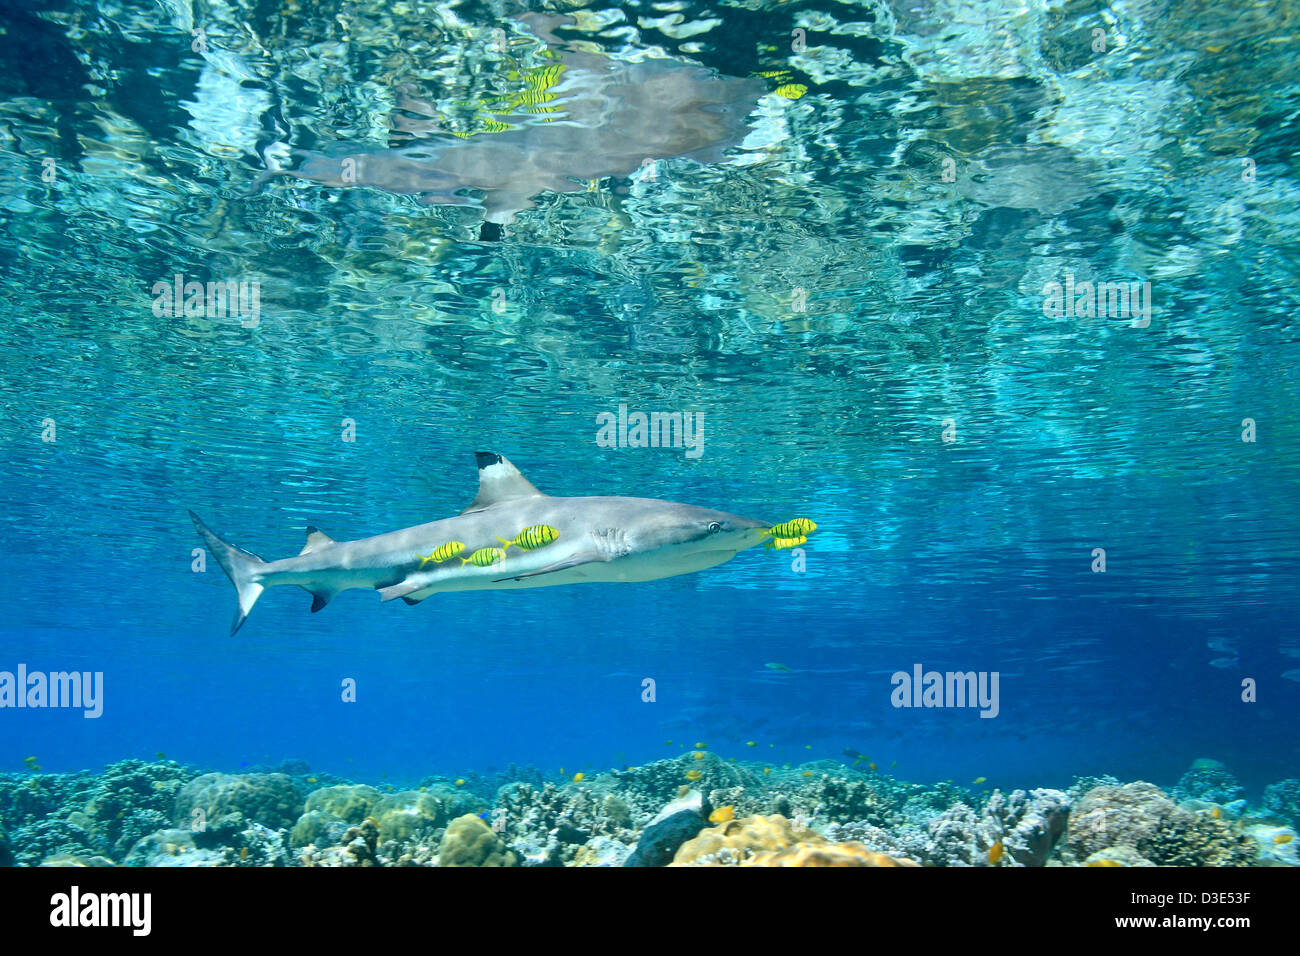 Carcharhinus melanopterus Blacktip Reef Shark natation en eau peu profonde au-dessus de coraux avec golden juvénile carangues Gnathanodon speciosus pilotfish Banque D'Images